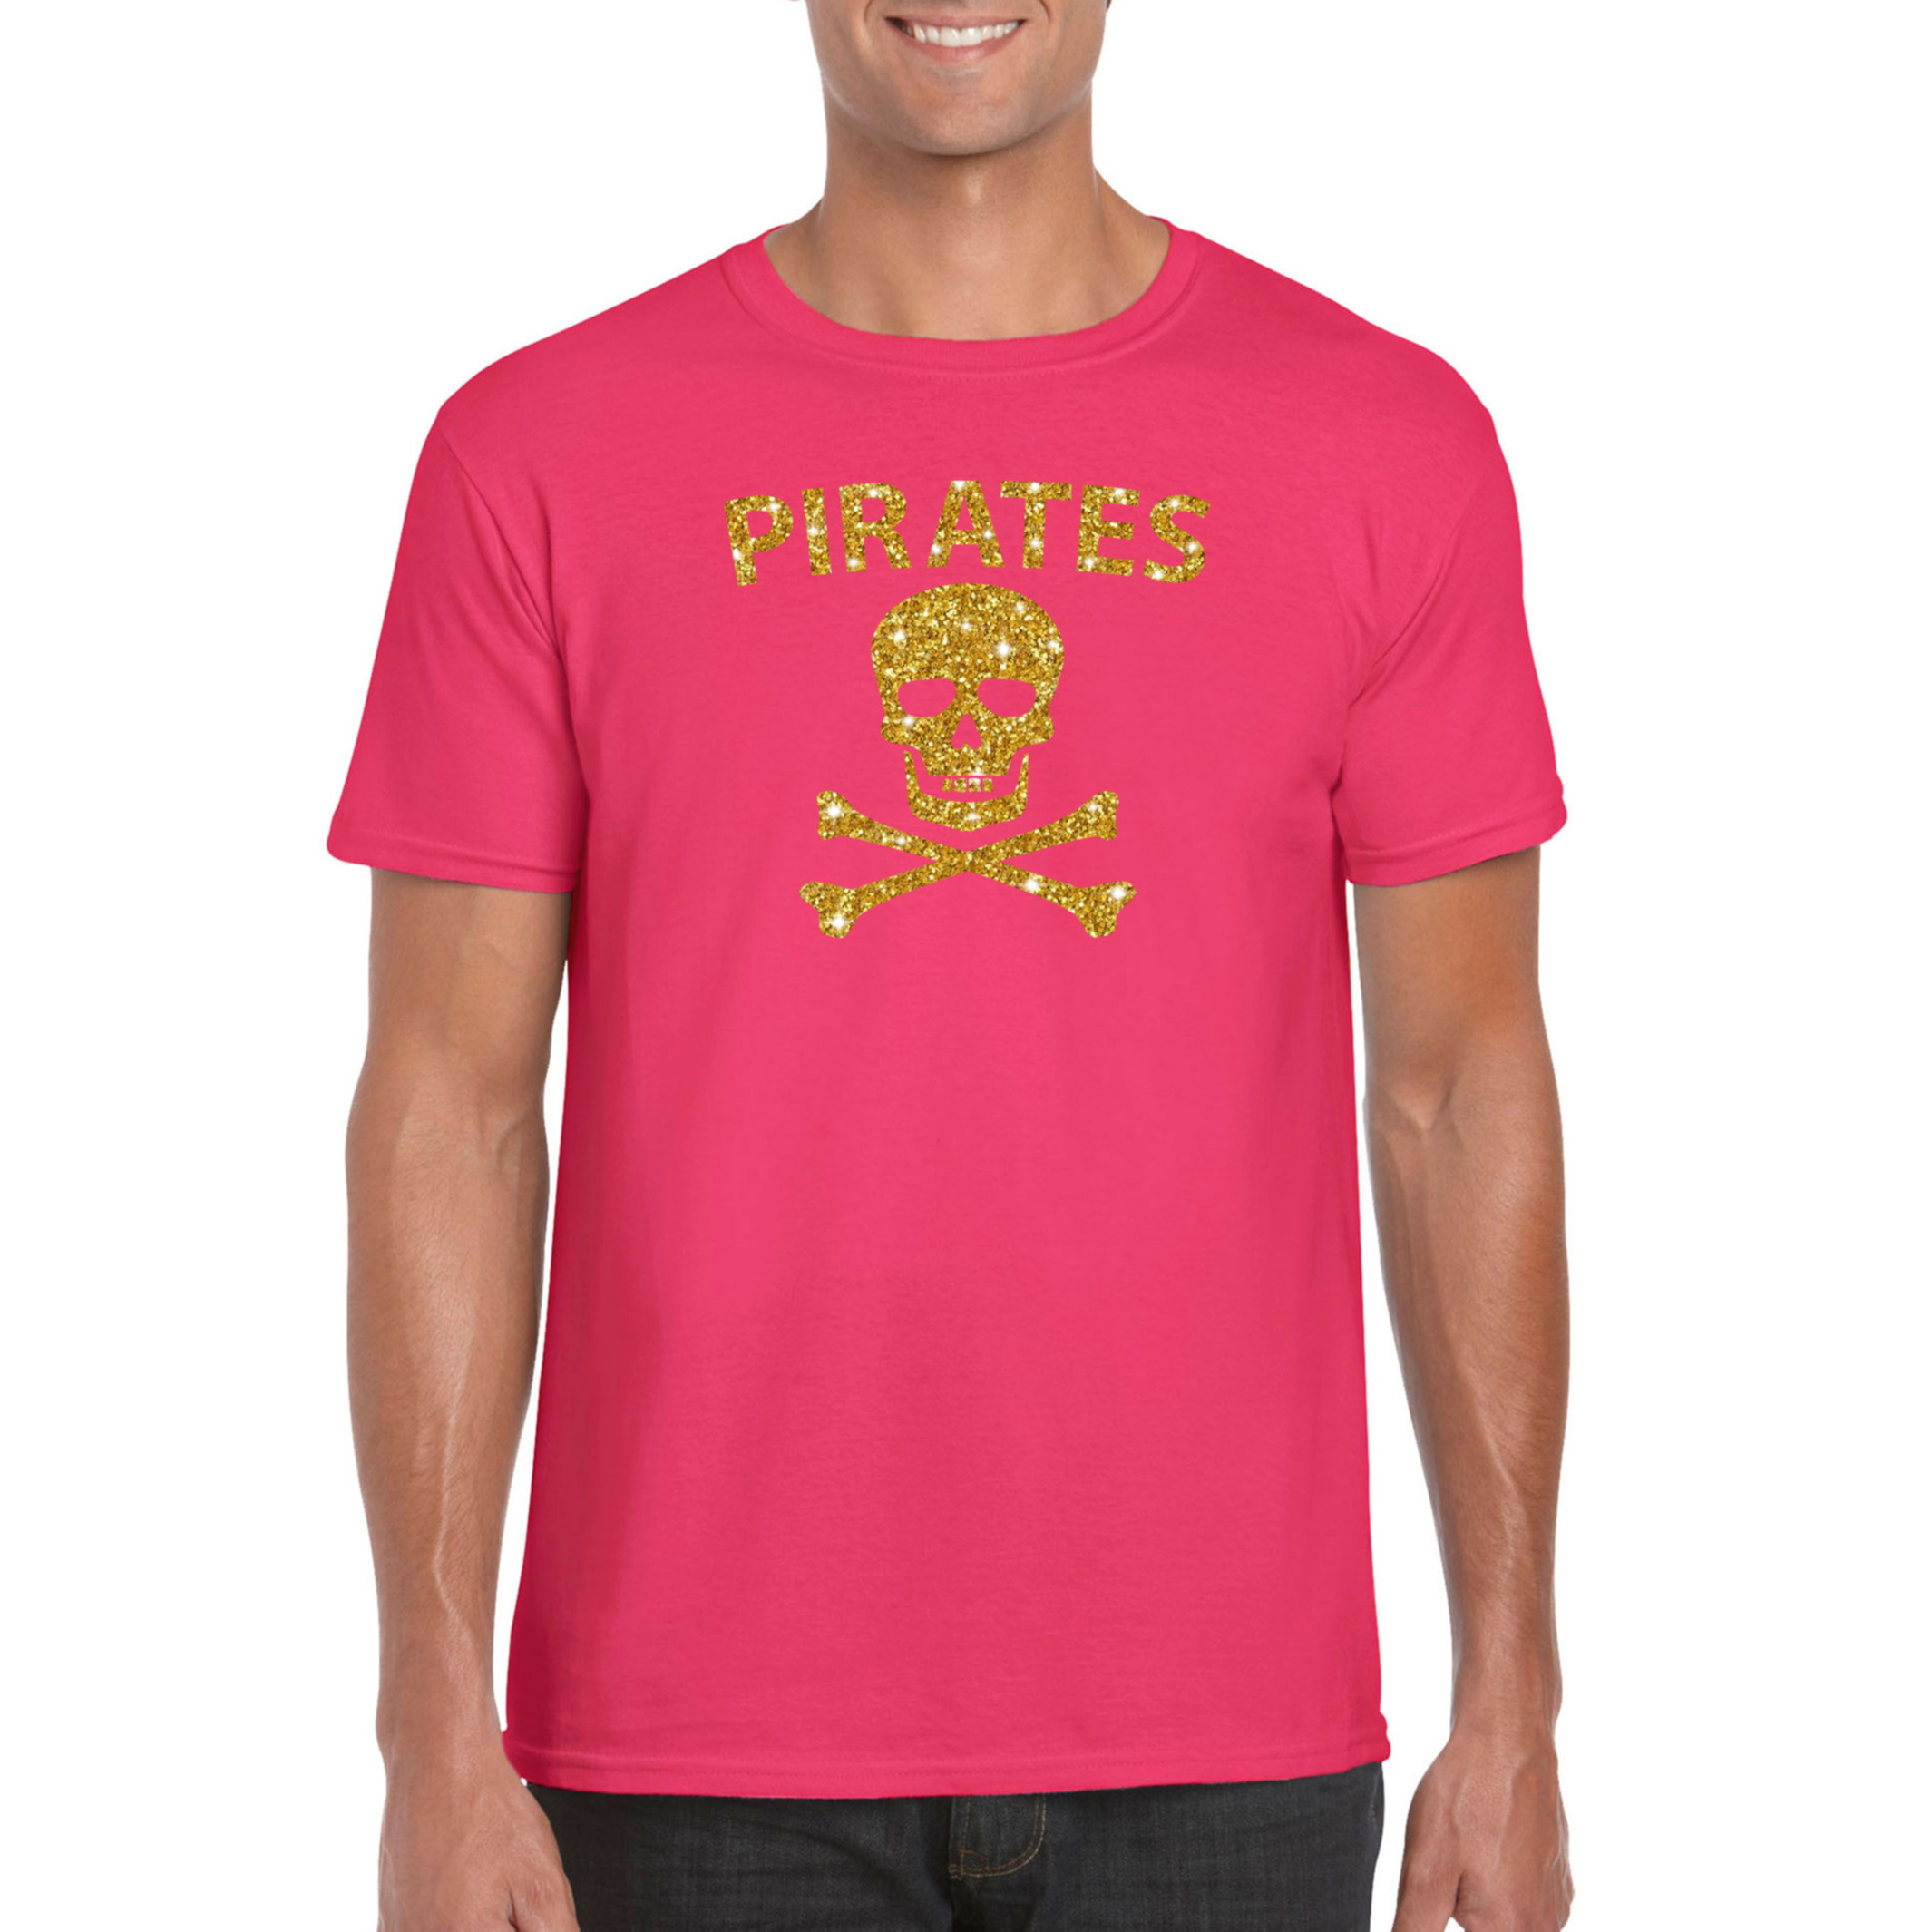 Carnaval foute party piraten t-shirt-kostuum roze heren met gouden glitter bedrukking